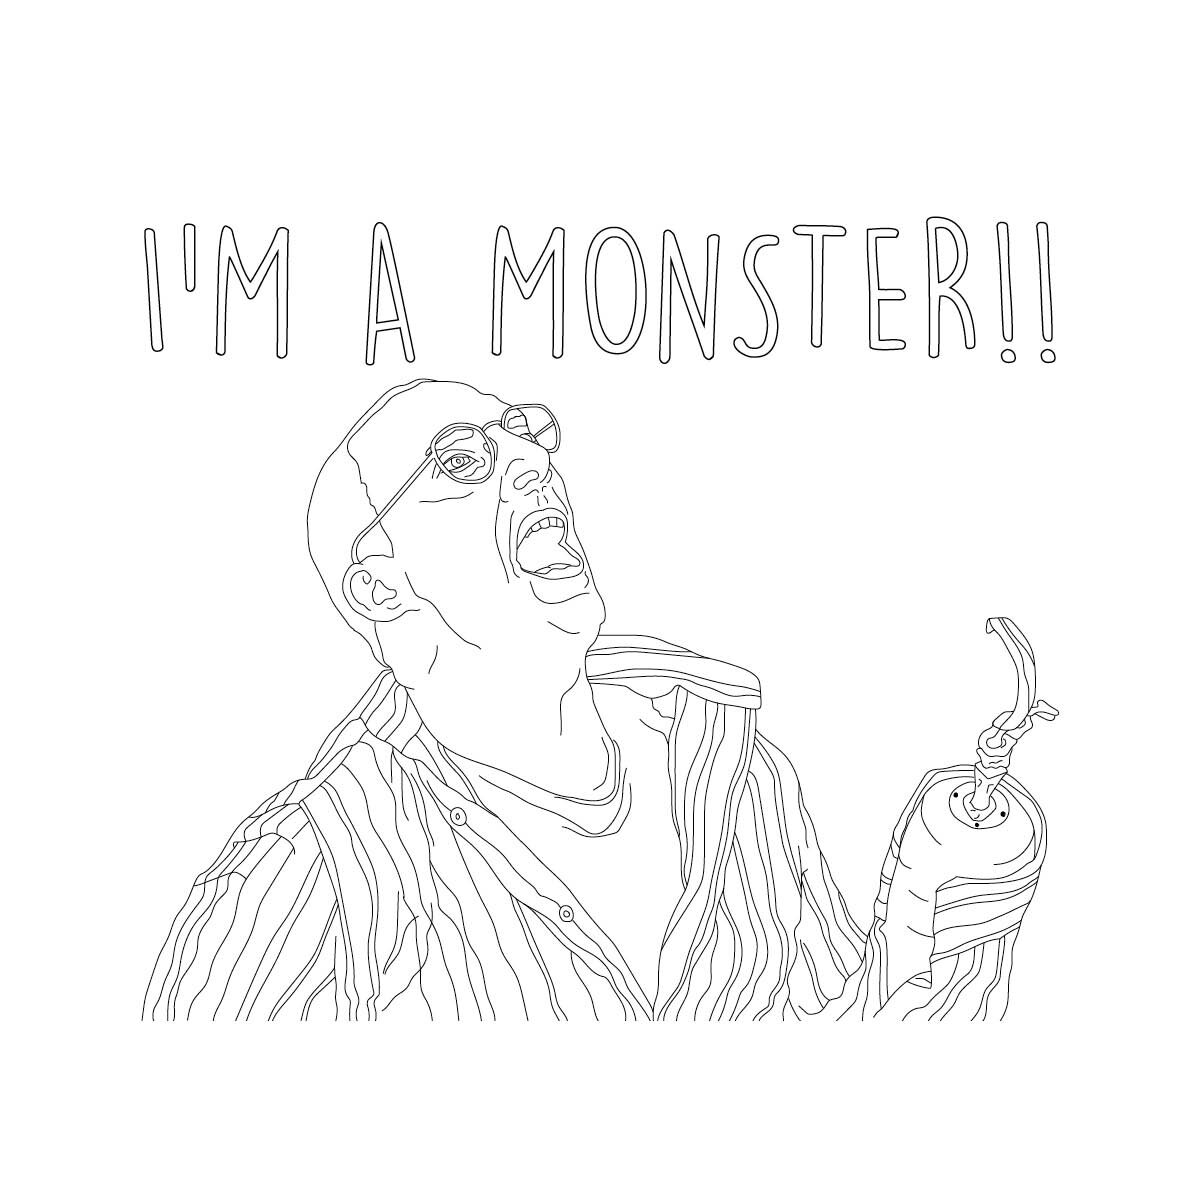 I'm a monster!.jpg